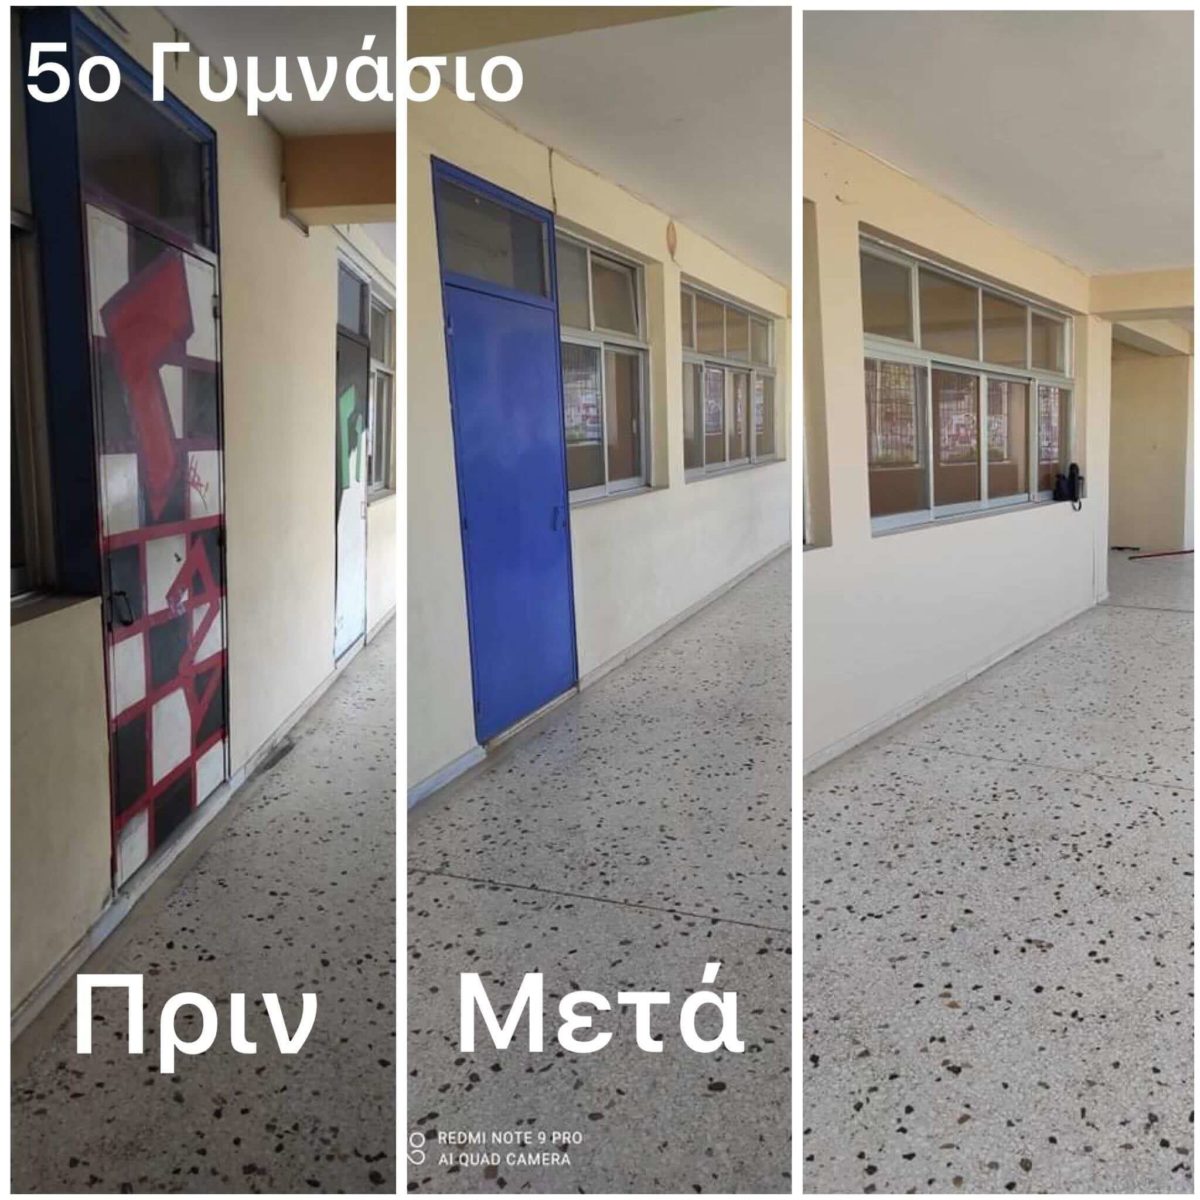 Γιώργος Μαρκόπουλος: Προχωράμε με εντατικούς ρυθμούς στη συντήρηση των σχολικών κτηρίων της πόλης μας